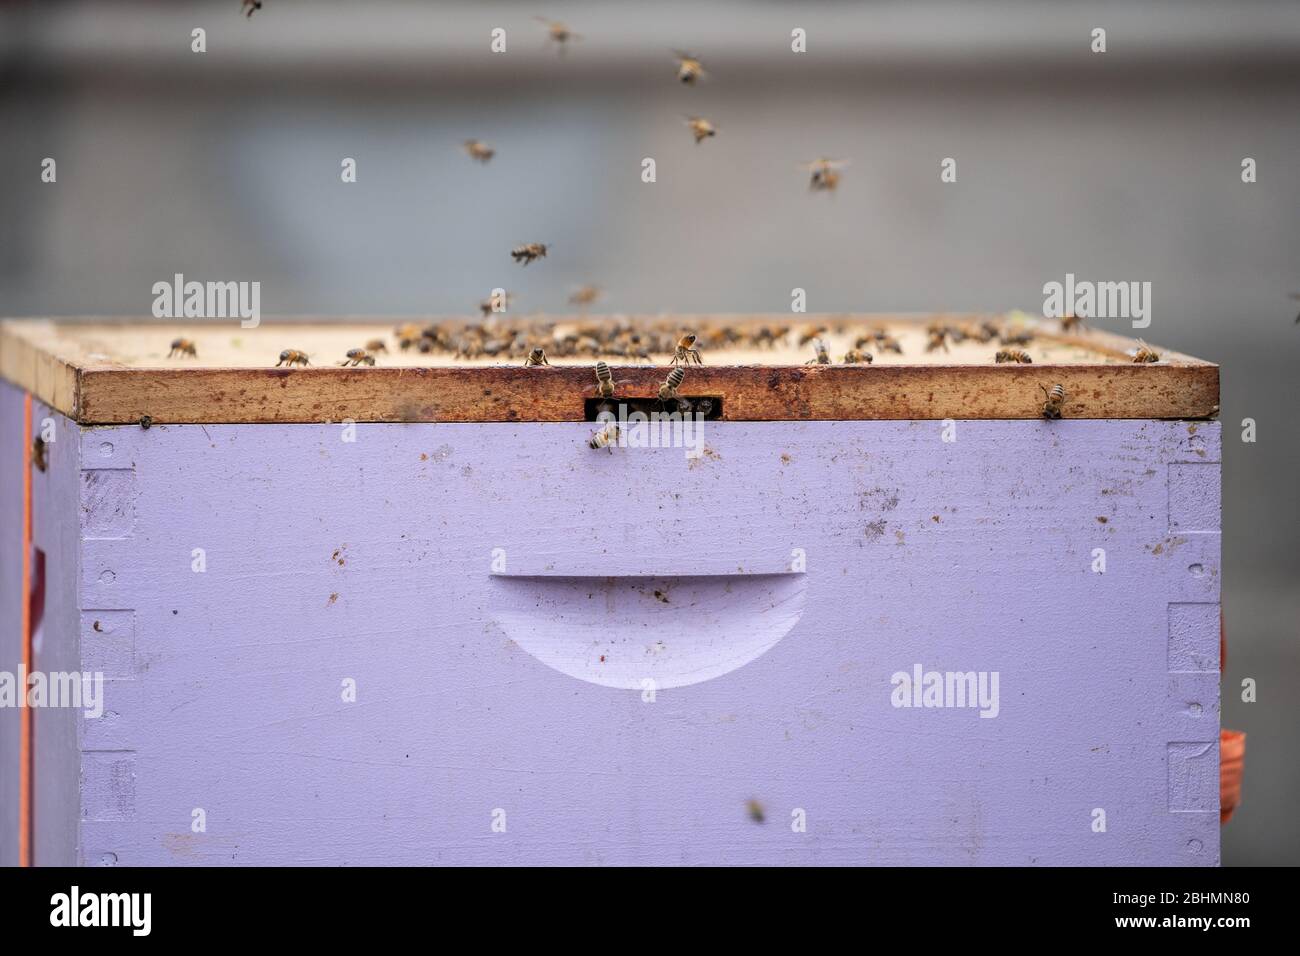 Honigbienen (apis mellifera) werden mit Zitronengras in eine Box gelockt, damit sie an einen sicheren Ort verlegt werden können. Stockfoto